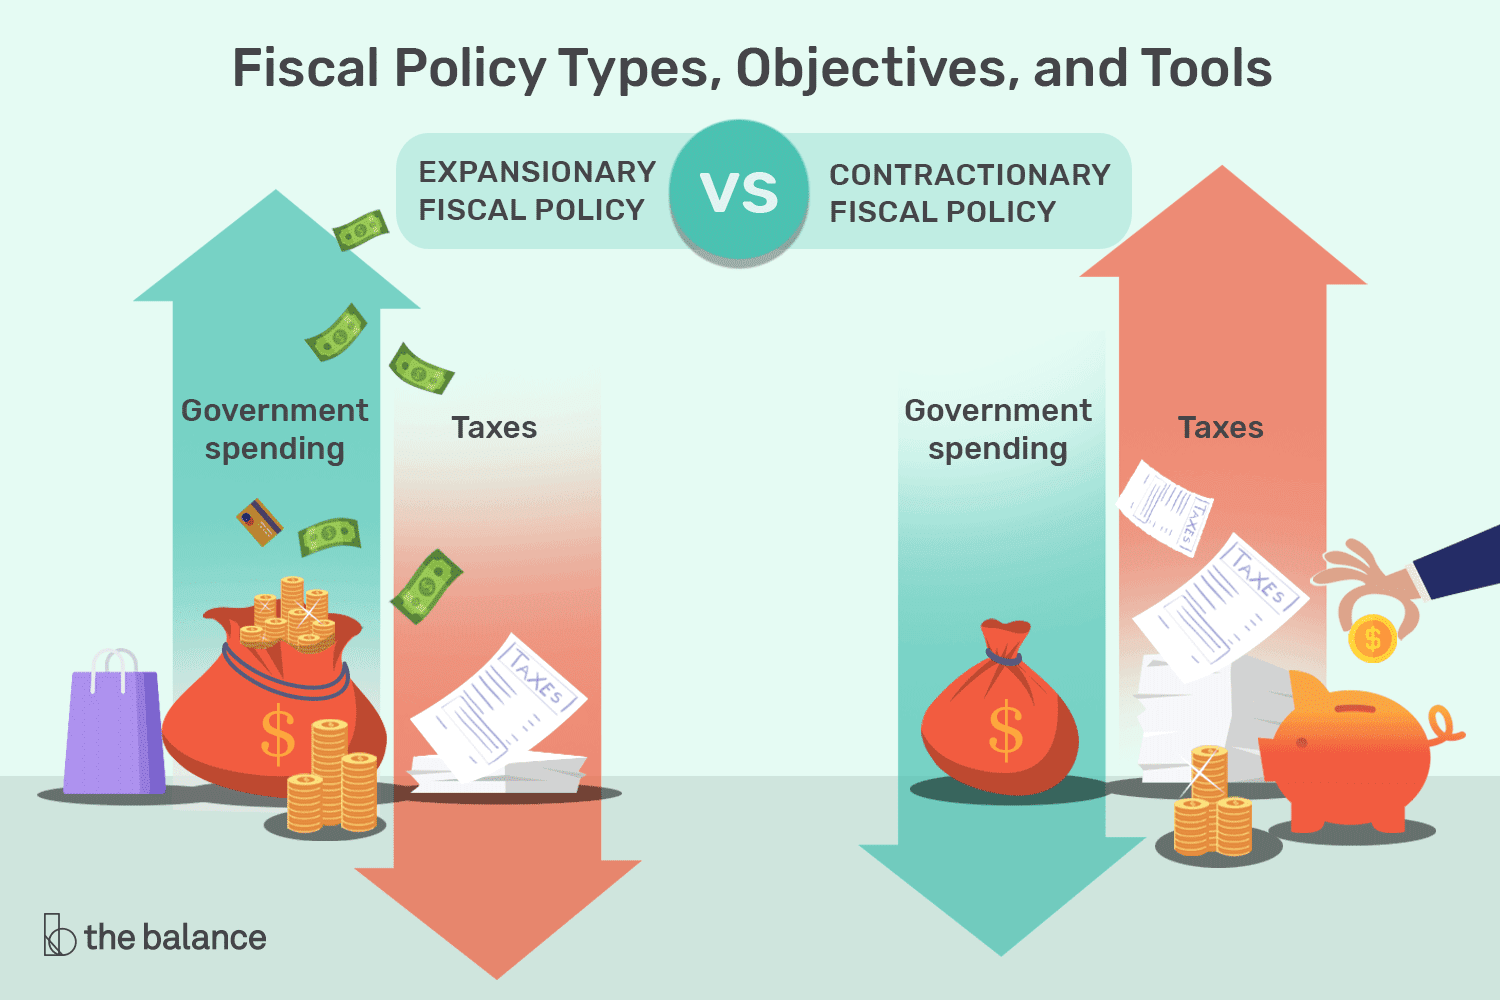 财政政策的类型:扩张性(箭头指向向上)和收缩性(箭头指向向下)。